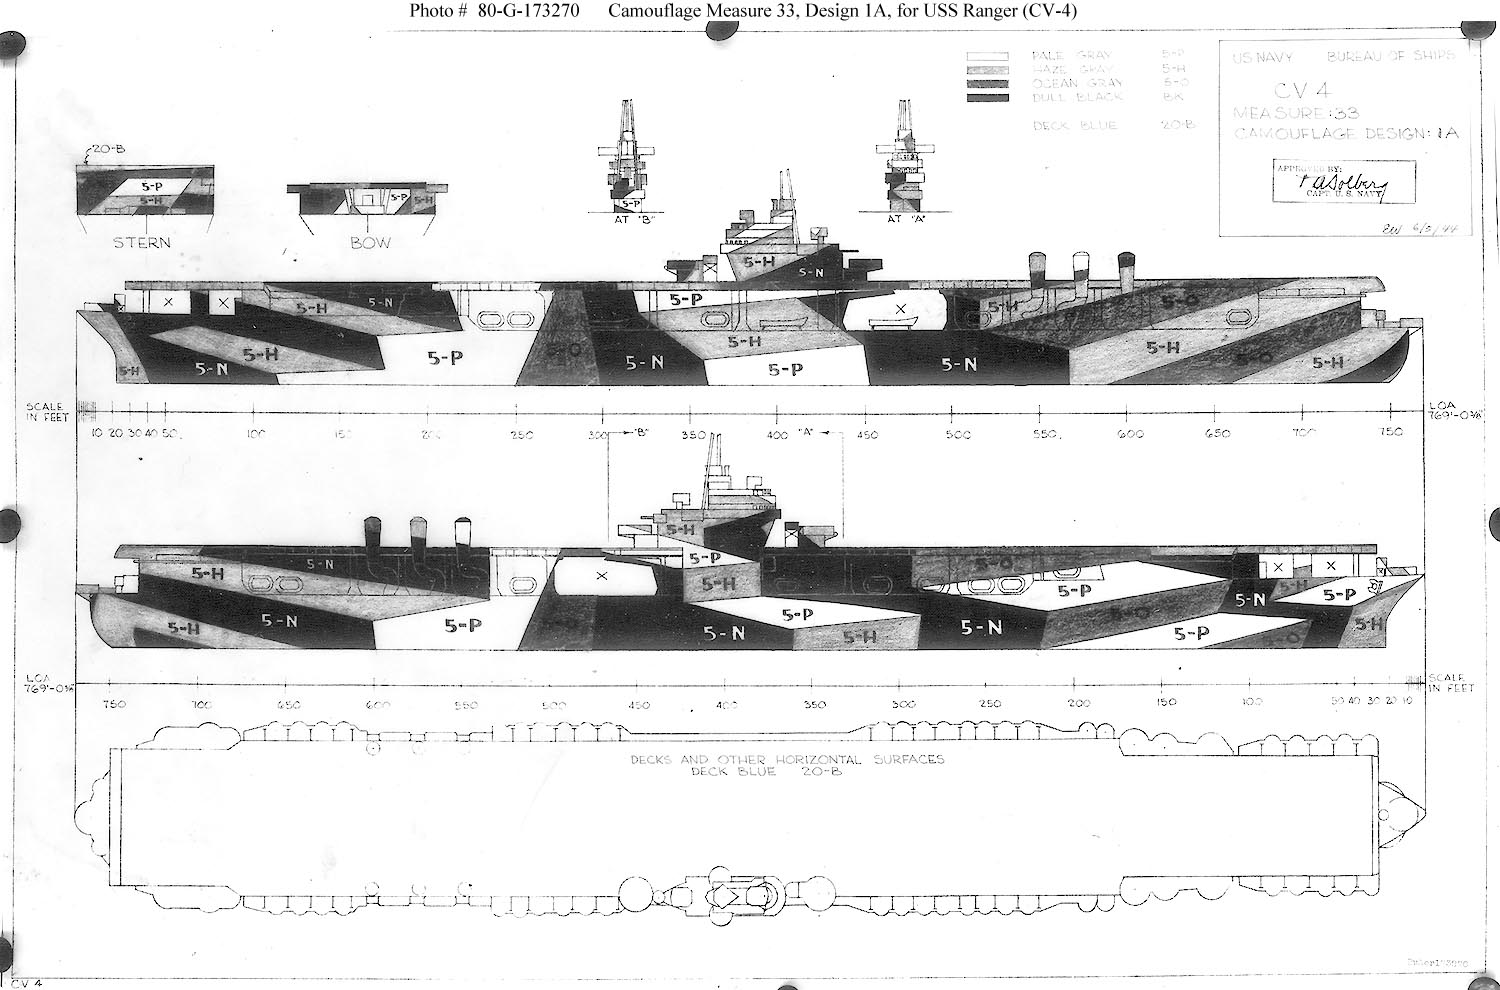 Les projets de bateaux de l'axe (toutes marques & échelles confondues) M33_1A_CV-4